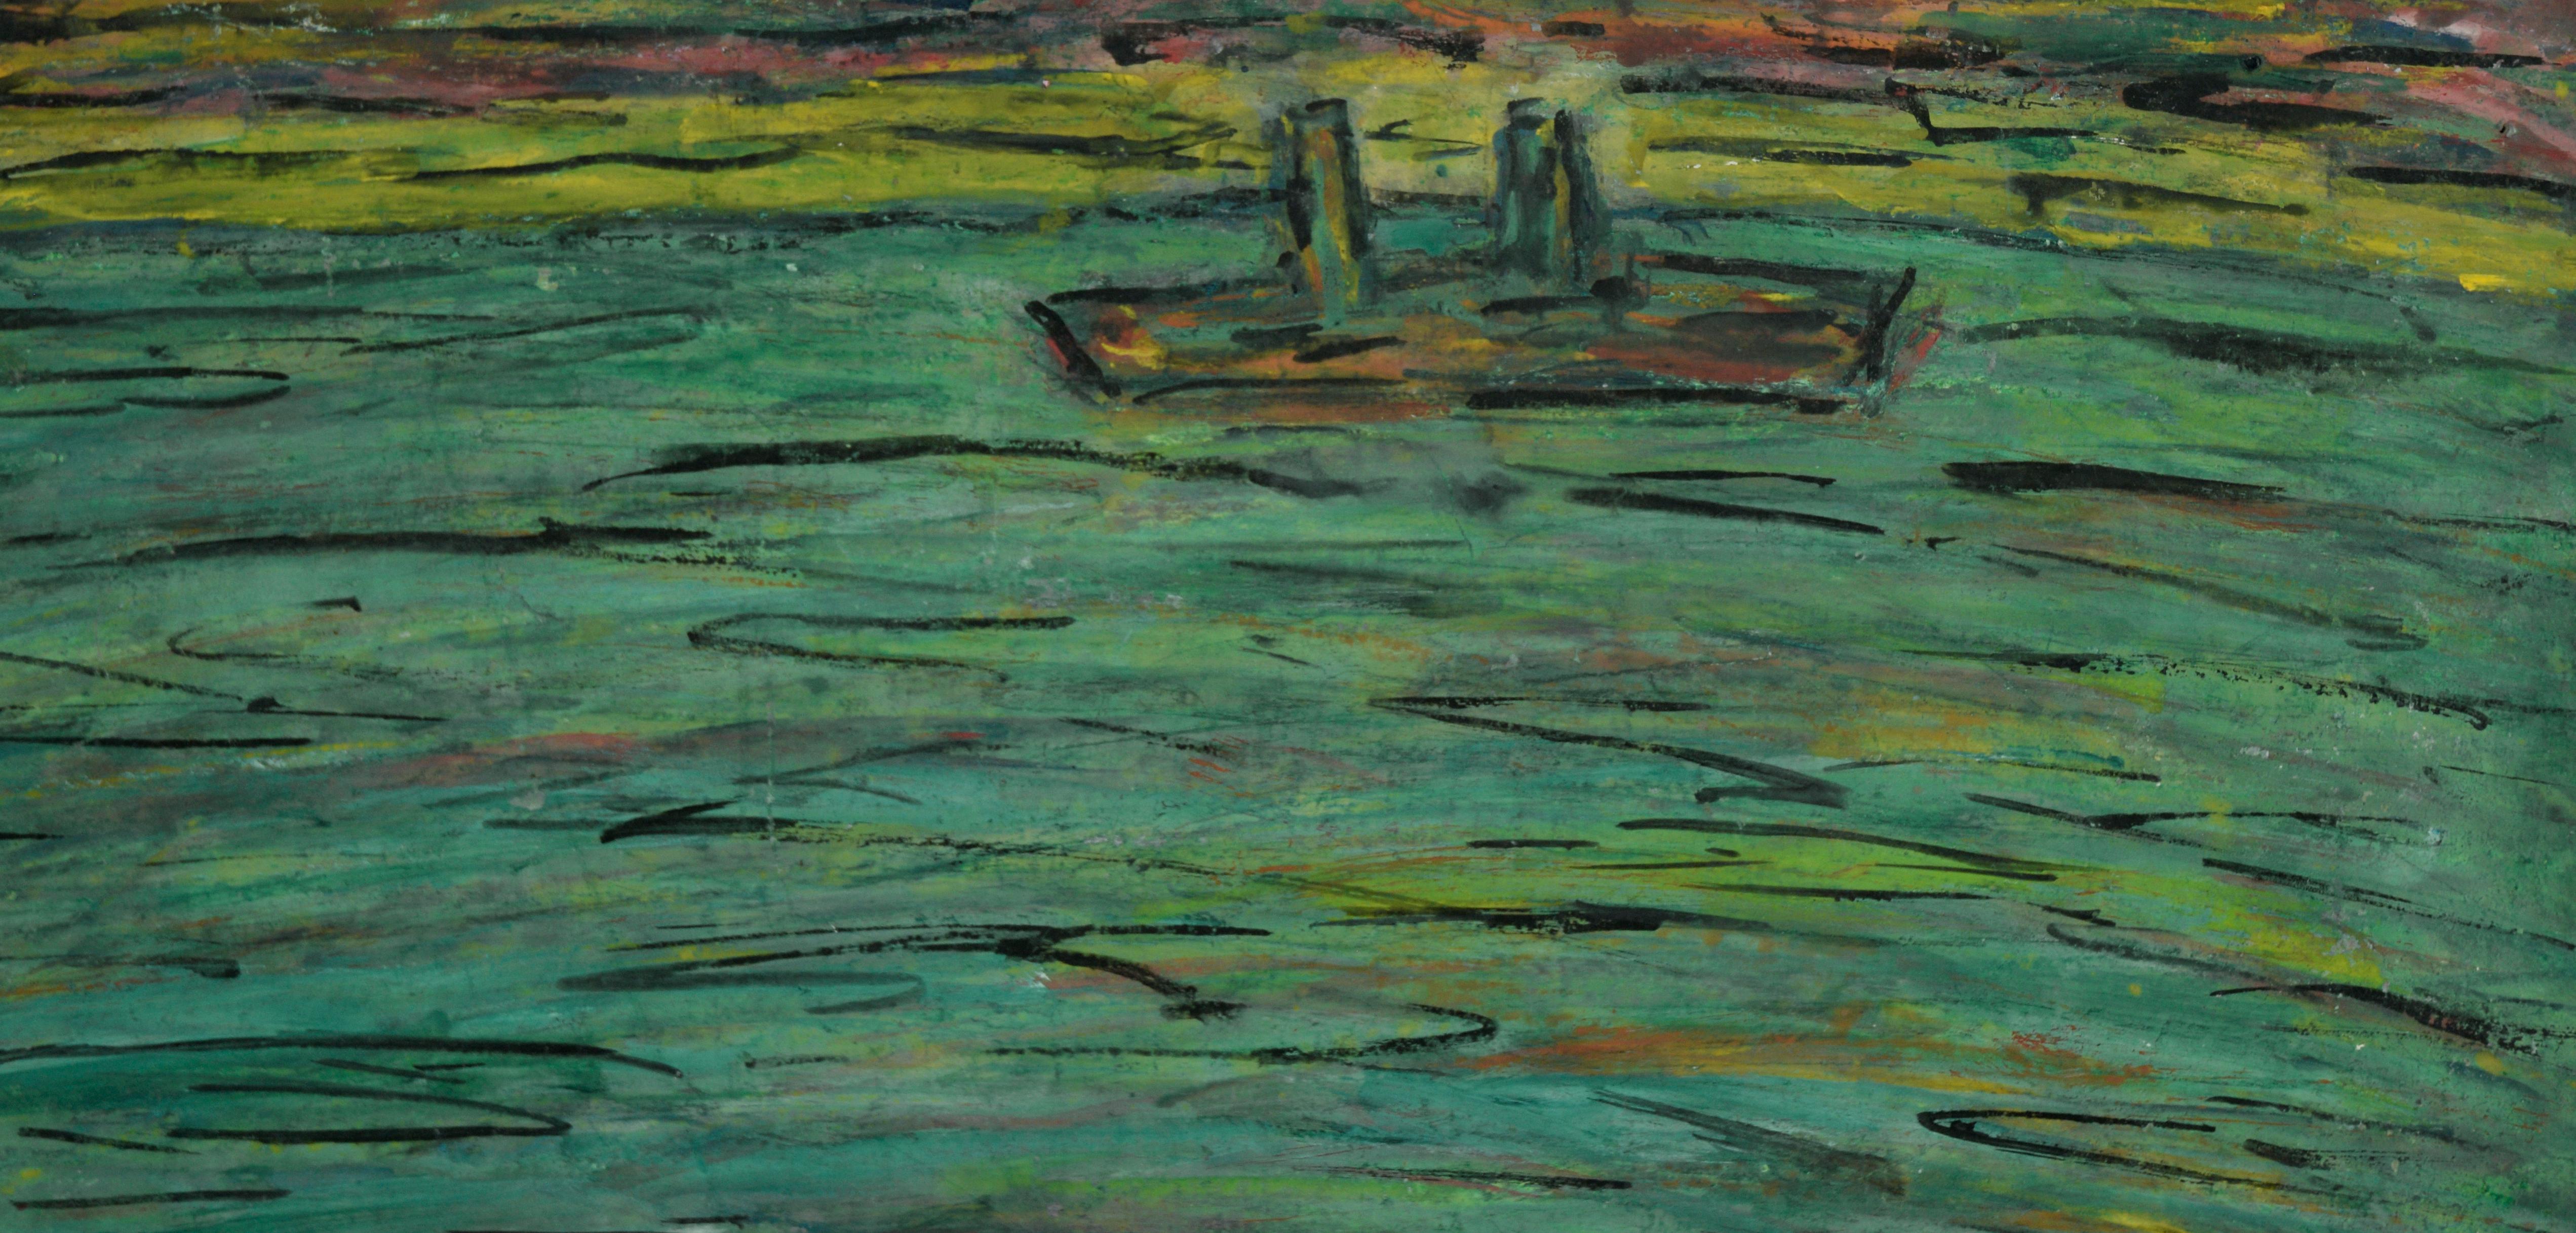 San Francisco Bay Area Meereslandschaft mit Schiffen in Öl auf Karton (Amerikanischer Impressionismus), Painting, von Honora Berg